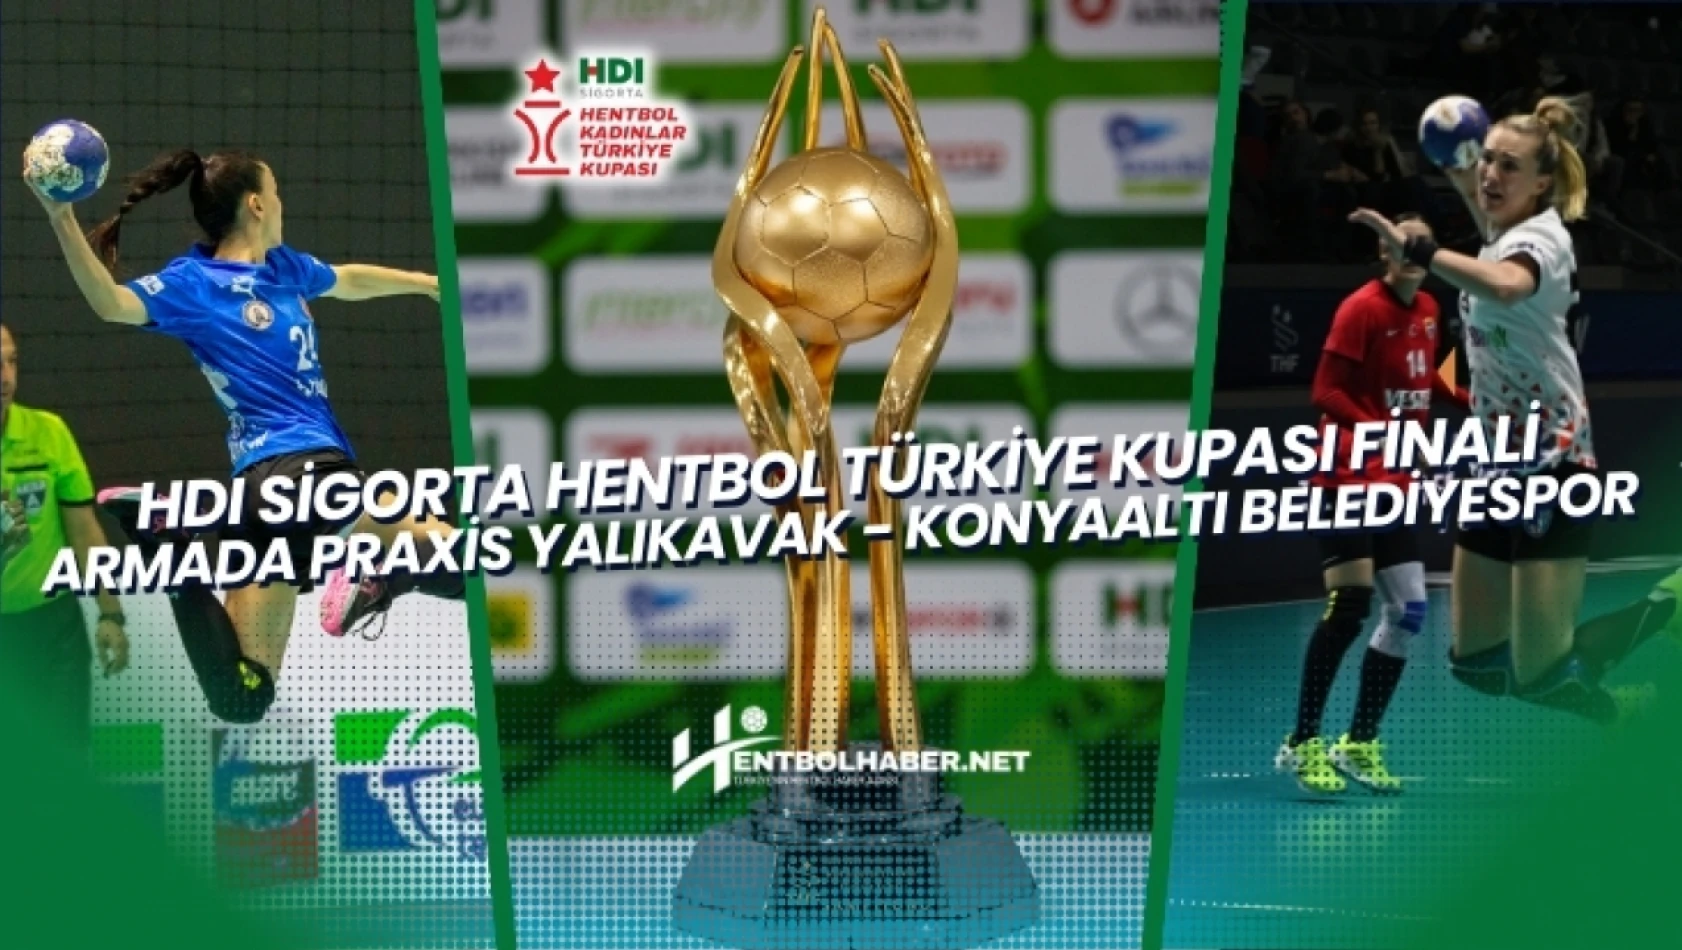 HDI Sigorta Hentbol Türkiye Kupası Finalinin Adı: Armada Praxis Yalıkavak - Konyaaltı Belediyespor